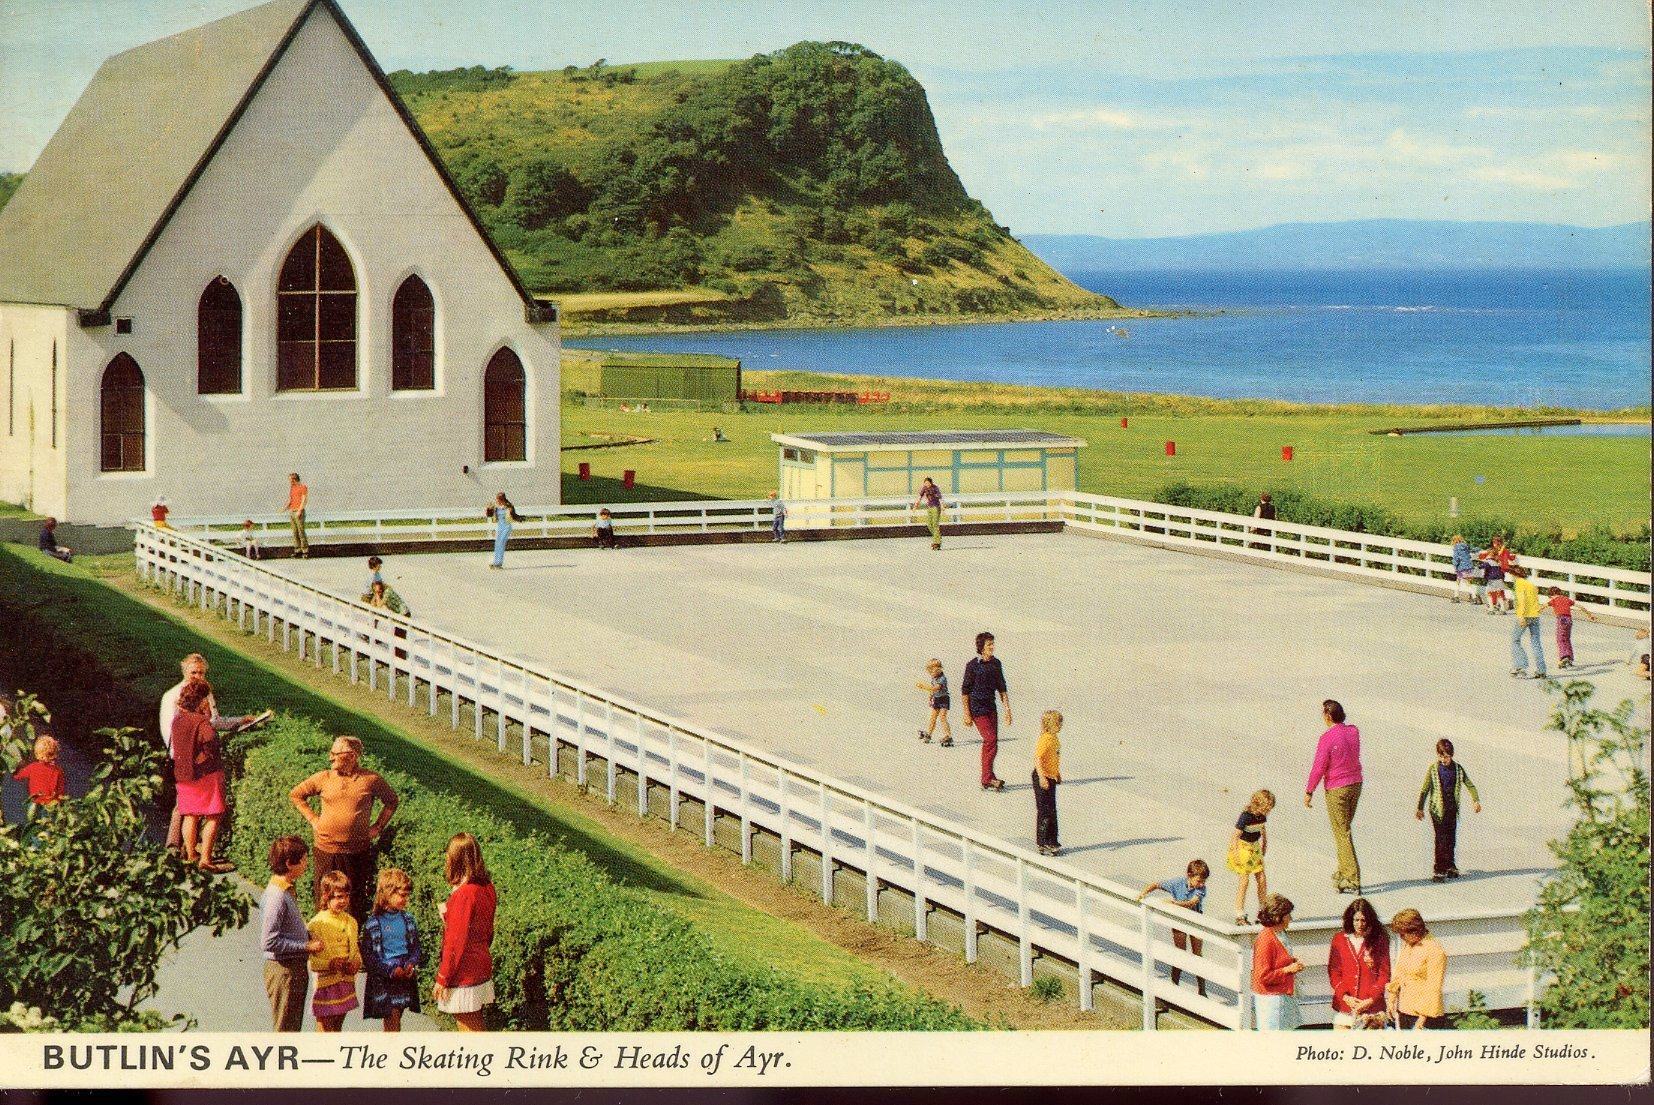 Butlins Ayr - Chapel and Skating Rink